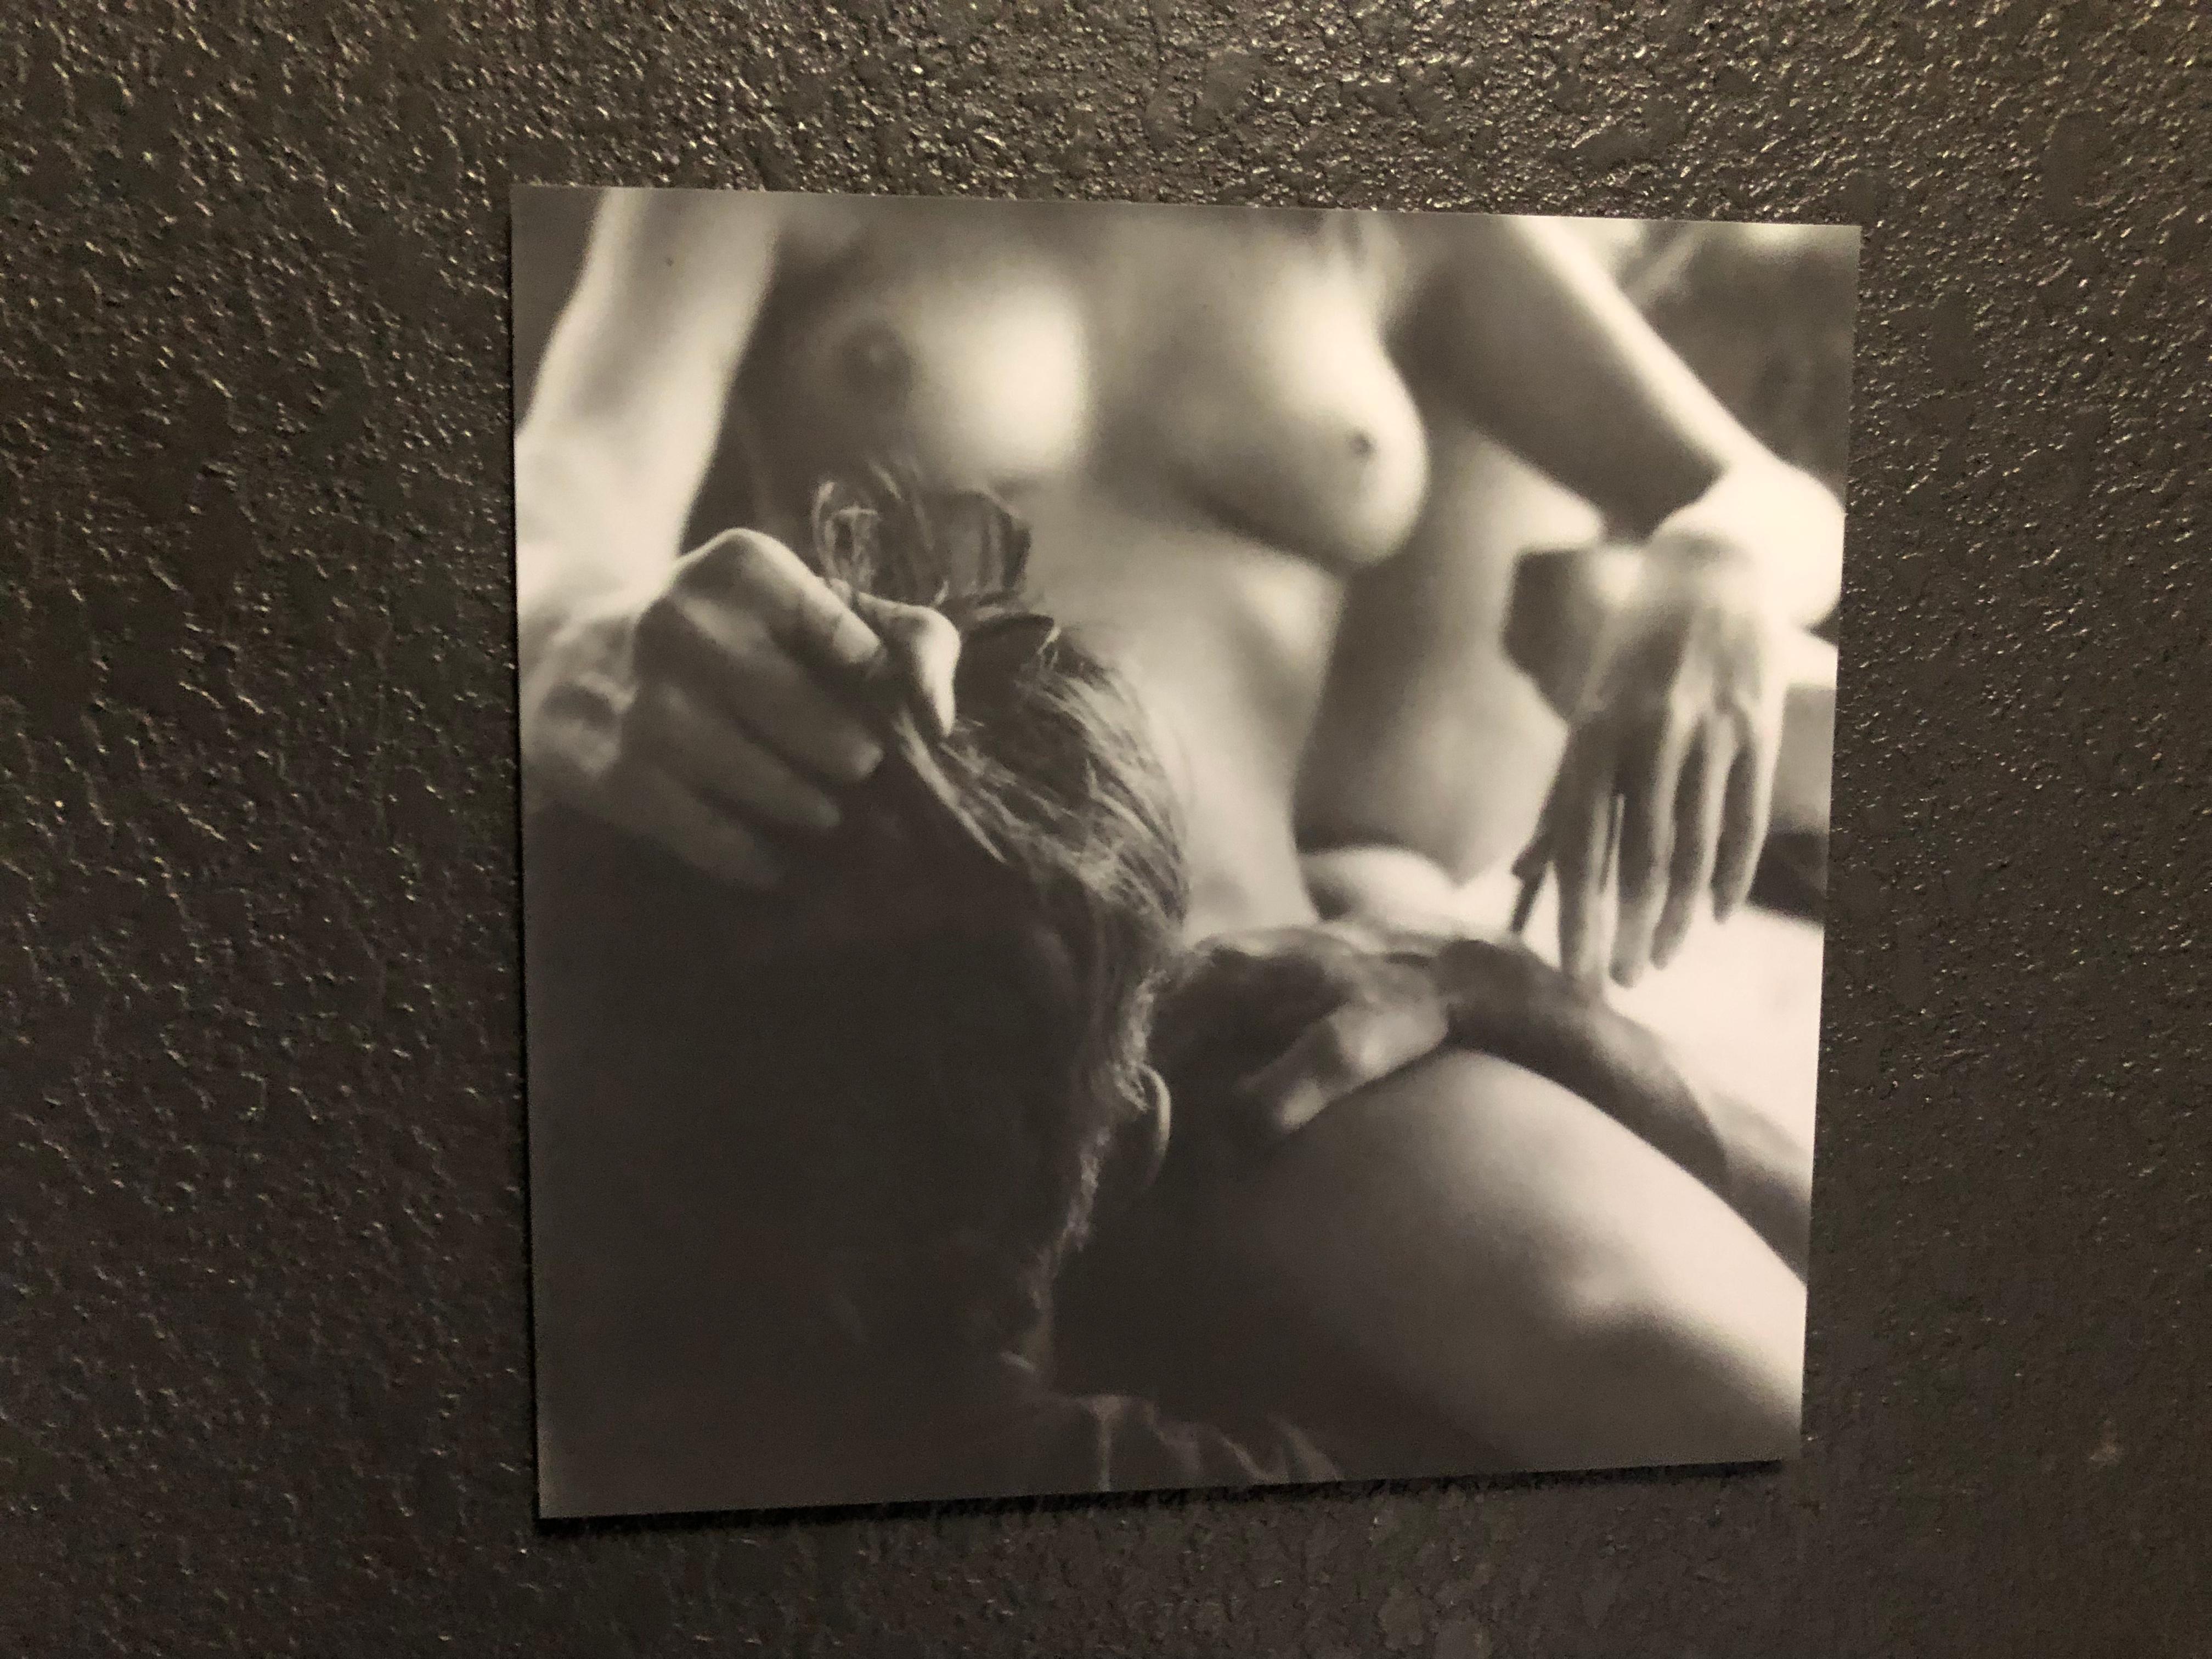 Melt with You – Zeitgenössisch, Nackt, Frauen, Polaroid, 21. Jahrhundert, Farbe (Schwarz), Black and White Photograph, von Kirsten Thys van den Audenaerde